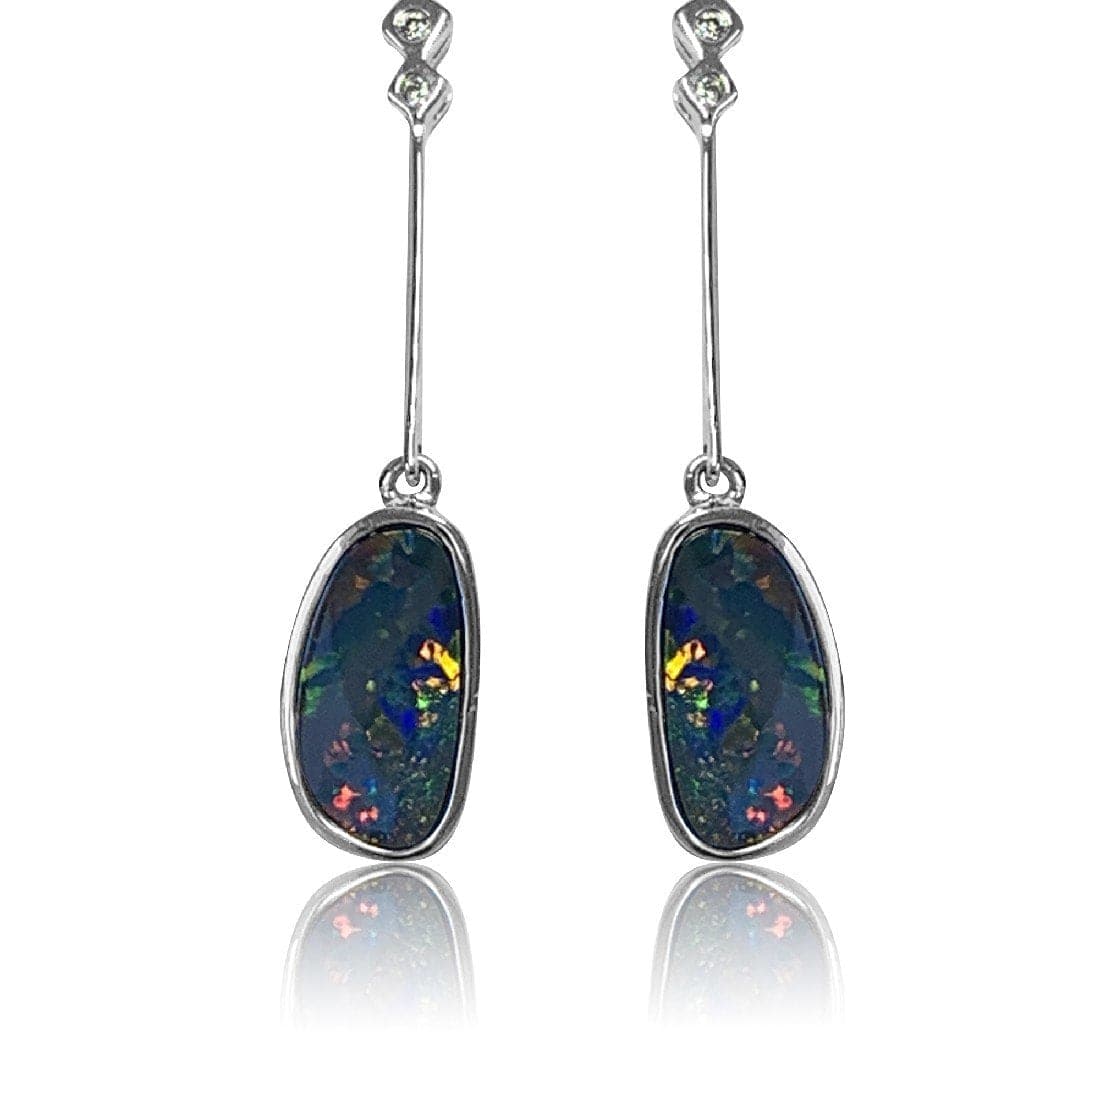 14kt White Gold Opal and Diamond earring drops - Masterpiece Jewellery Opal & Gems Sydney Australia | Online Shop